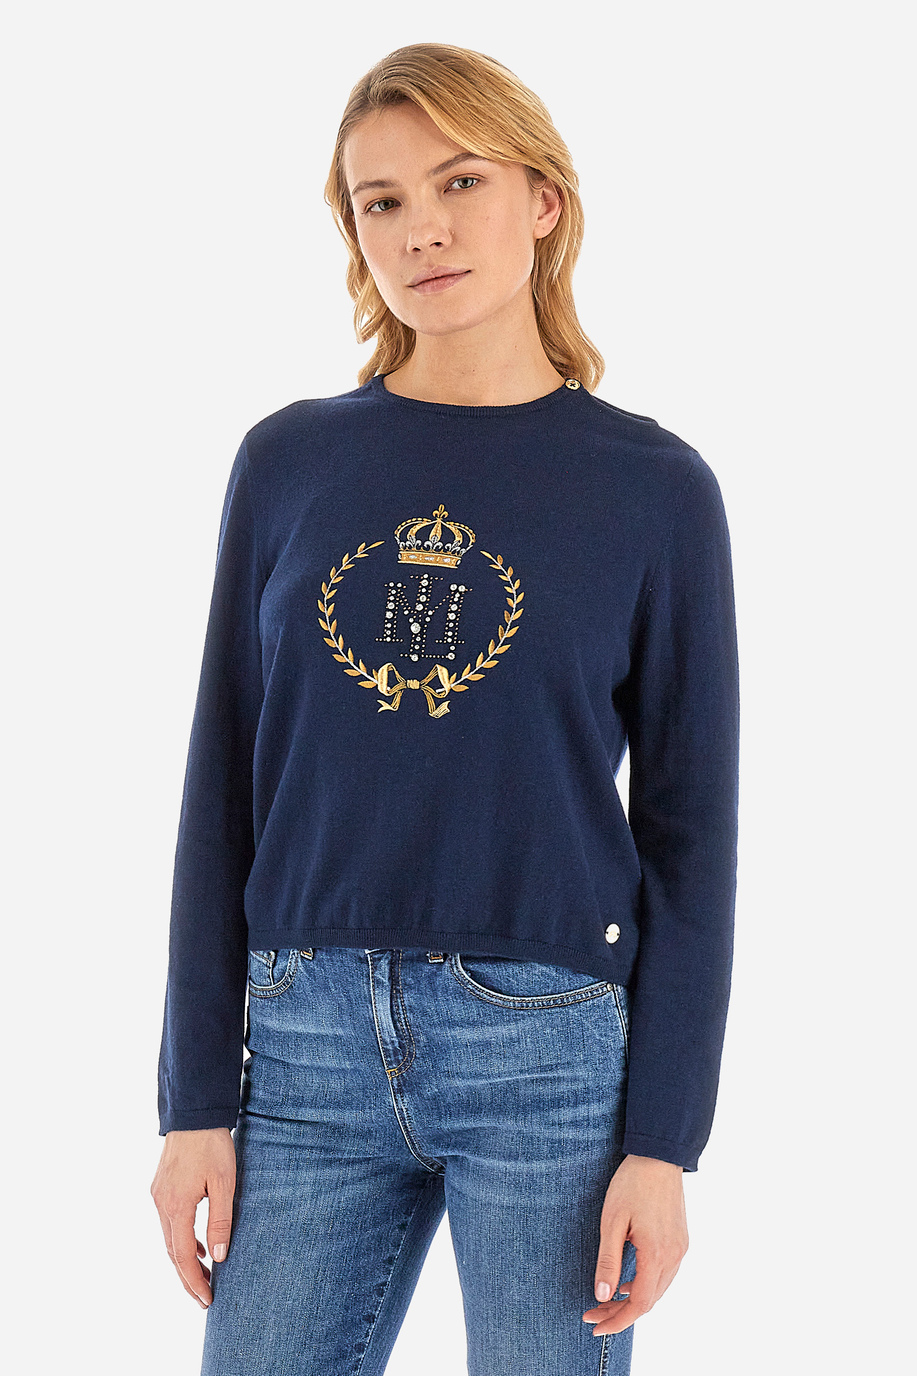 Women’s crew neck sweater - Wileen - Sweatshirts | La Martina - Official Online Shop